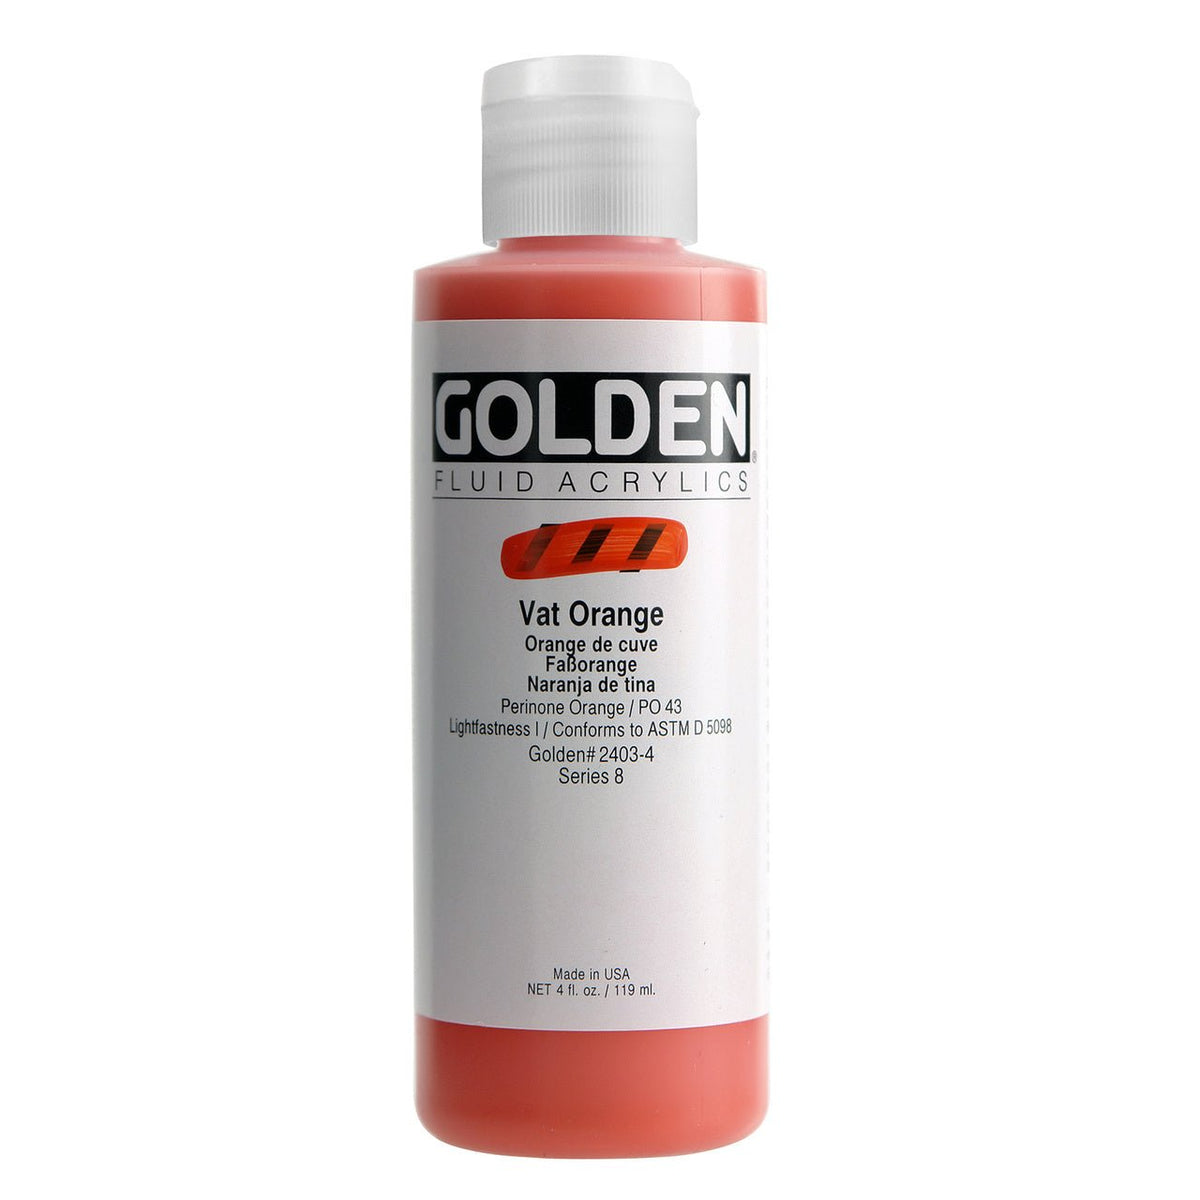 Golden Fluid Acrylic Vat Orange 4 oz - merriartist.com